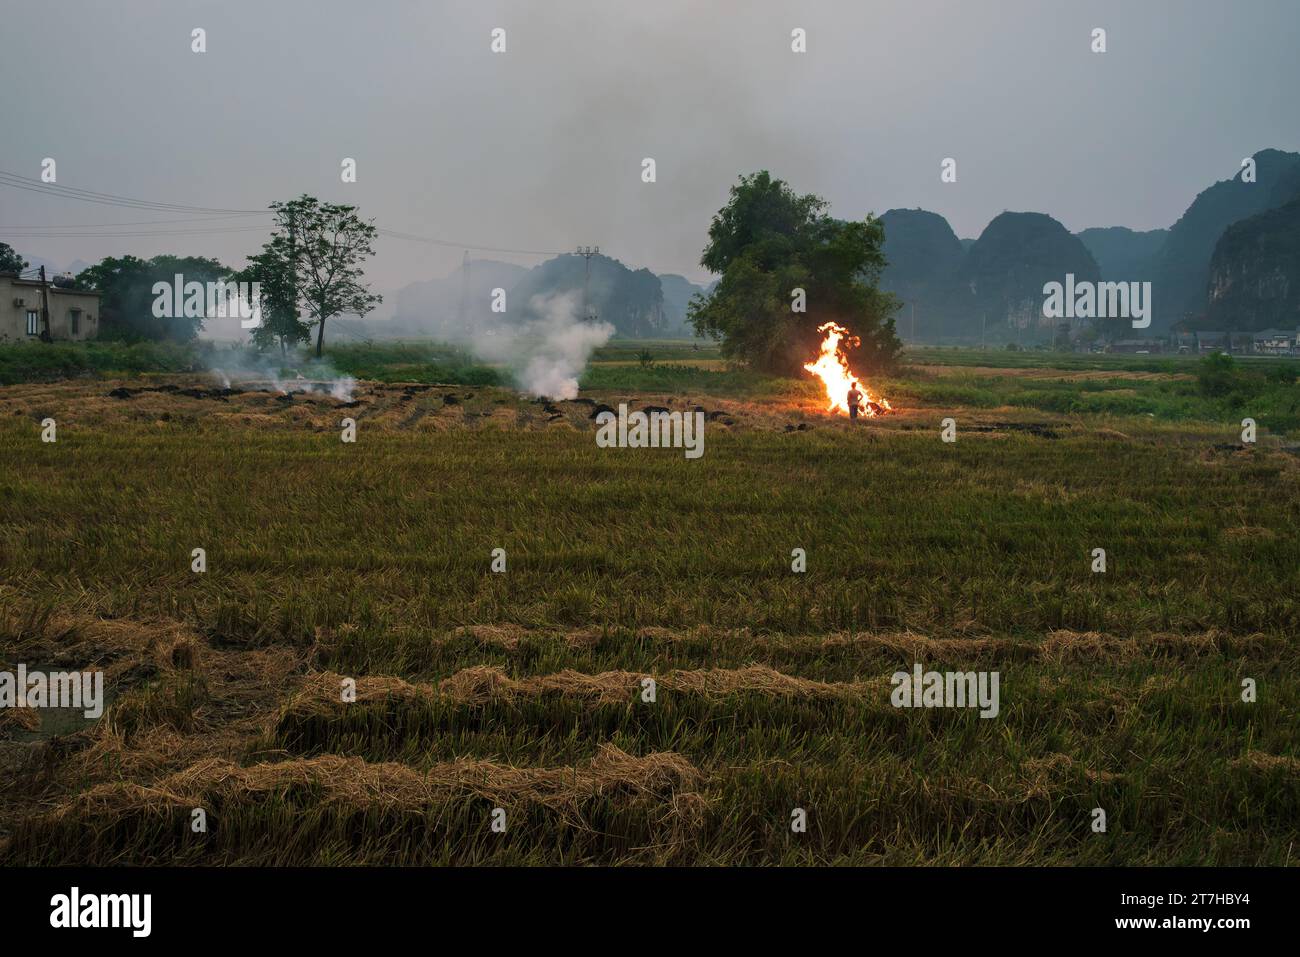 La combustione del campo di riso dopo il raccolto davanti alle montagne carsiche nella cosiddetta stagione delle fiamme, provocando smog e foschia, Ninh Binh, Vietnam Foto Stock